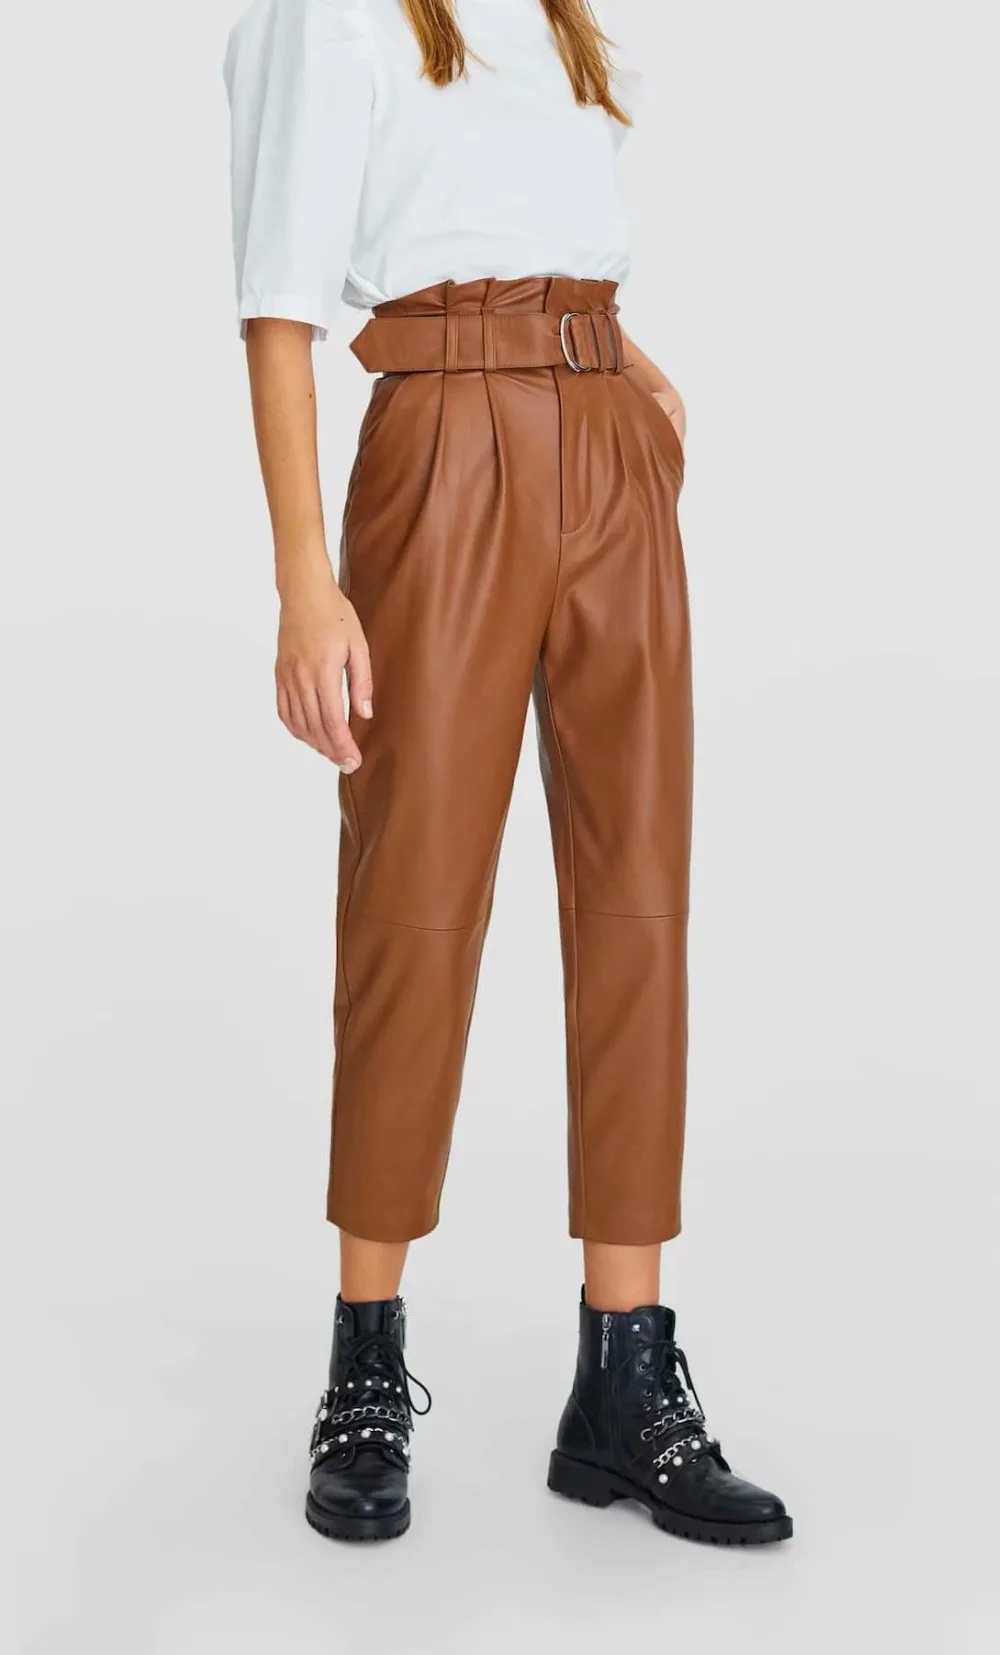 Увядшие английские уличные винтажные плиссированные кожаные брюки из искусственной кожи с высокой талией женские брюки mujer pantalon femme